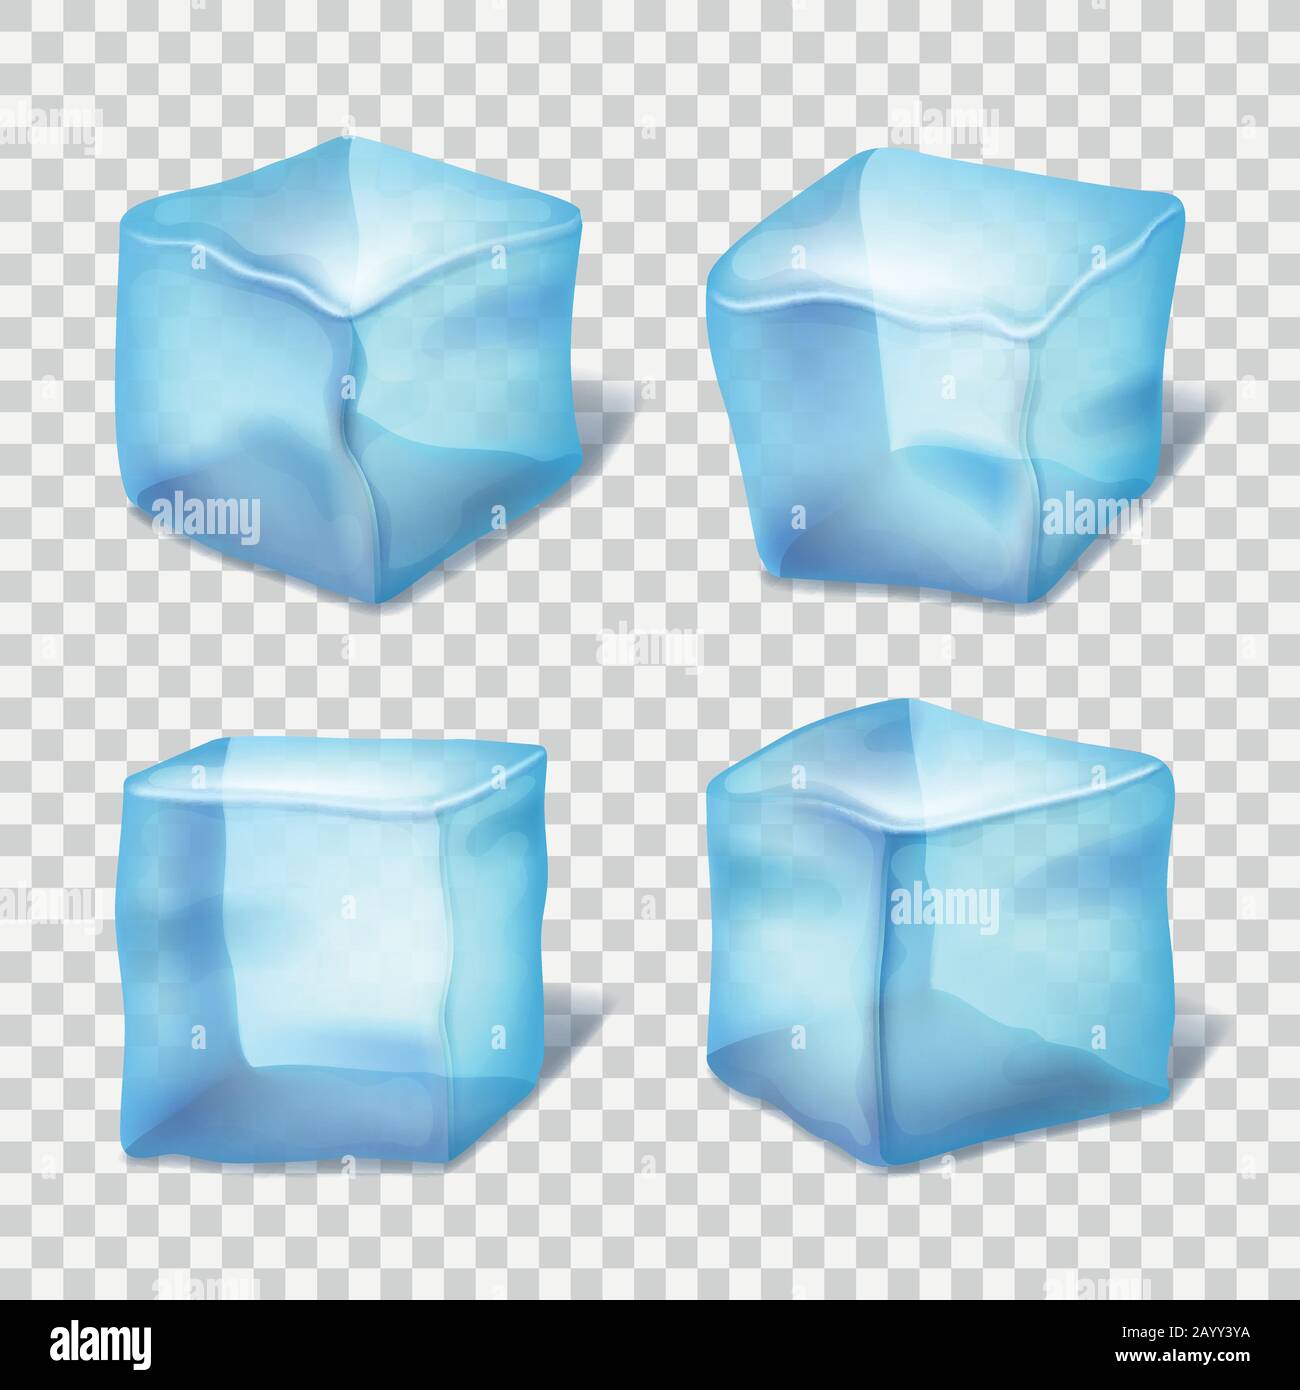 Glaçons bleus transparents sur fond plat. Glace réaliste sous forme de cube, collection de glace transparente. Illustration vectorielle Illustration de Vecteur